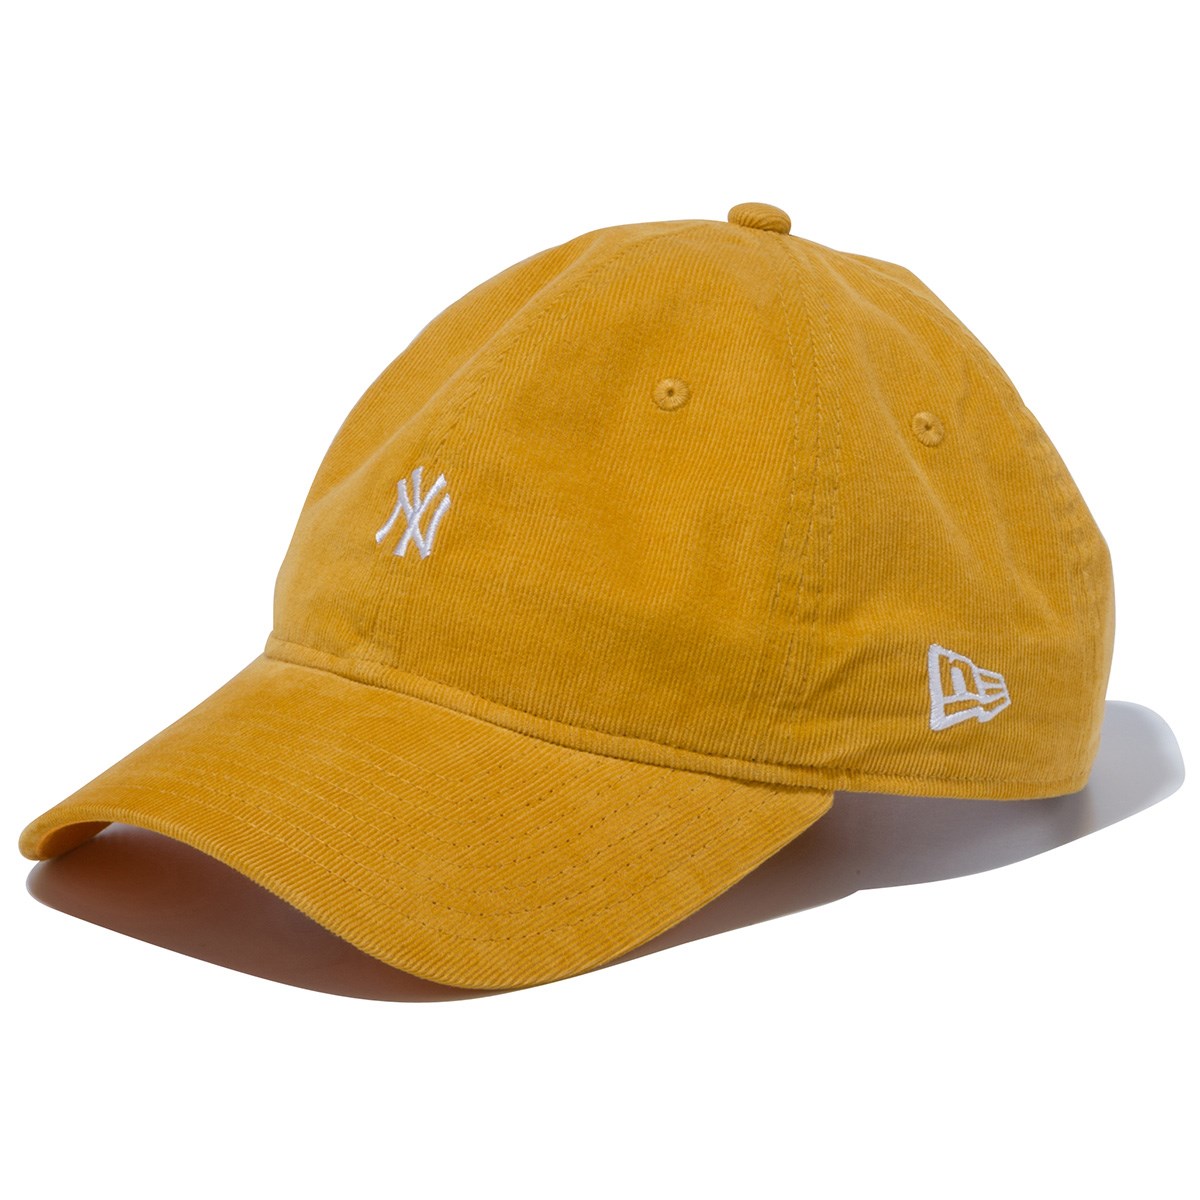 「ニューエラ 920 NEYYAN MICRO CORDUROY キャップ 」（帽子）- ゴルフ(GOLF)用品のネット通販